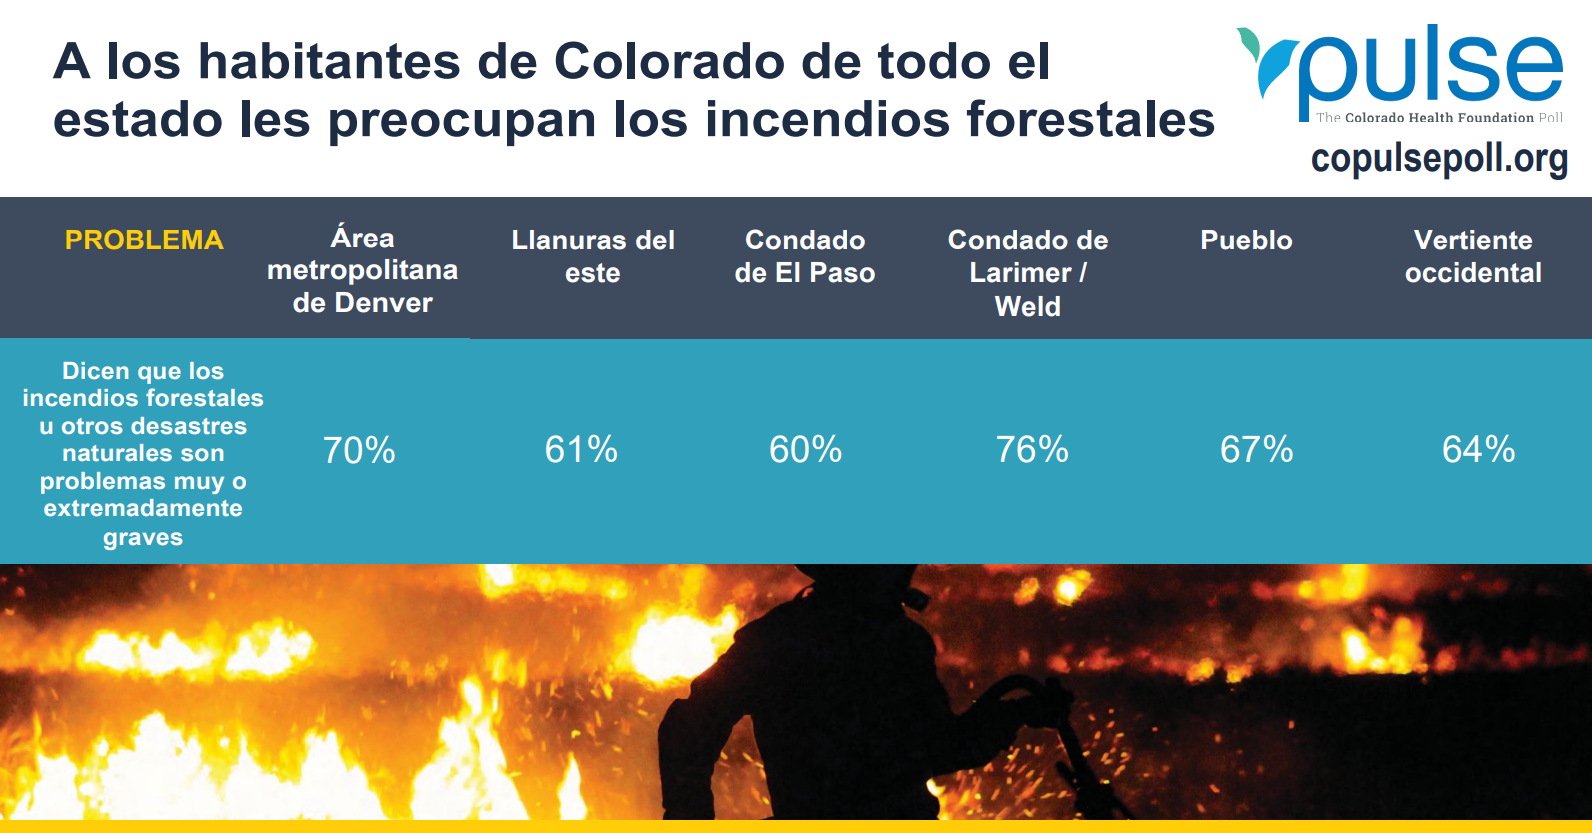 A los habitantes de Colorado de todo el estado les preocupan los incendios forestales